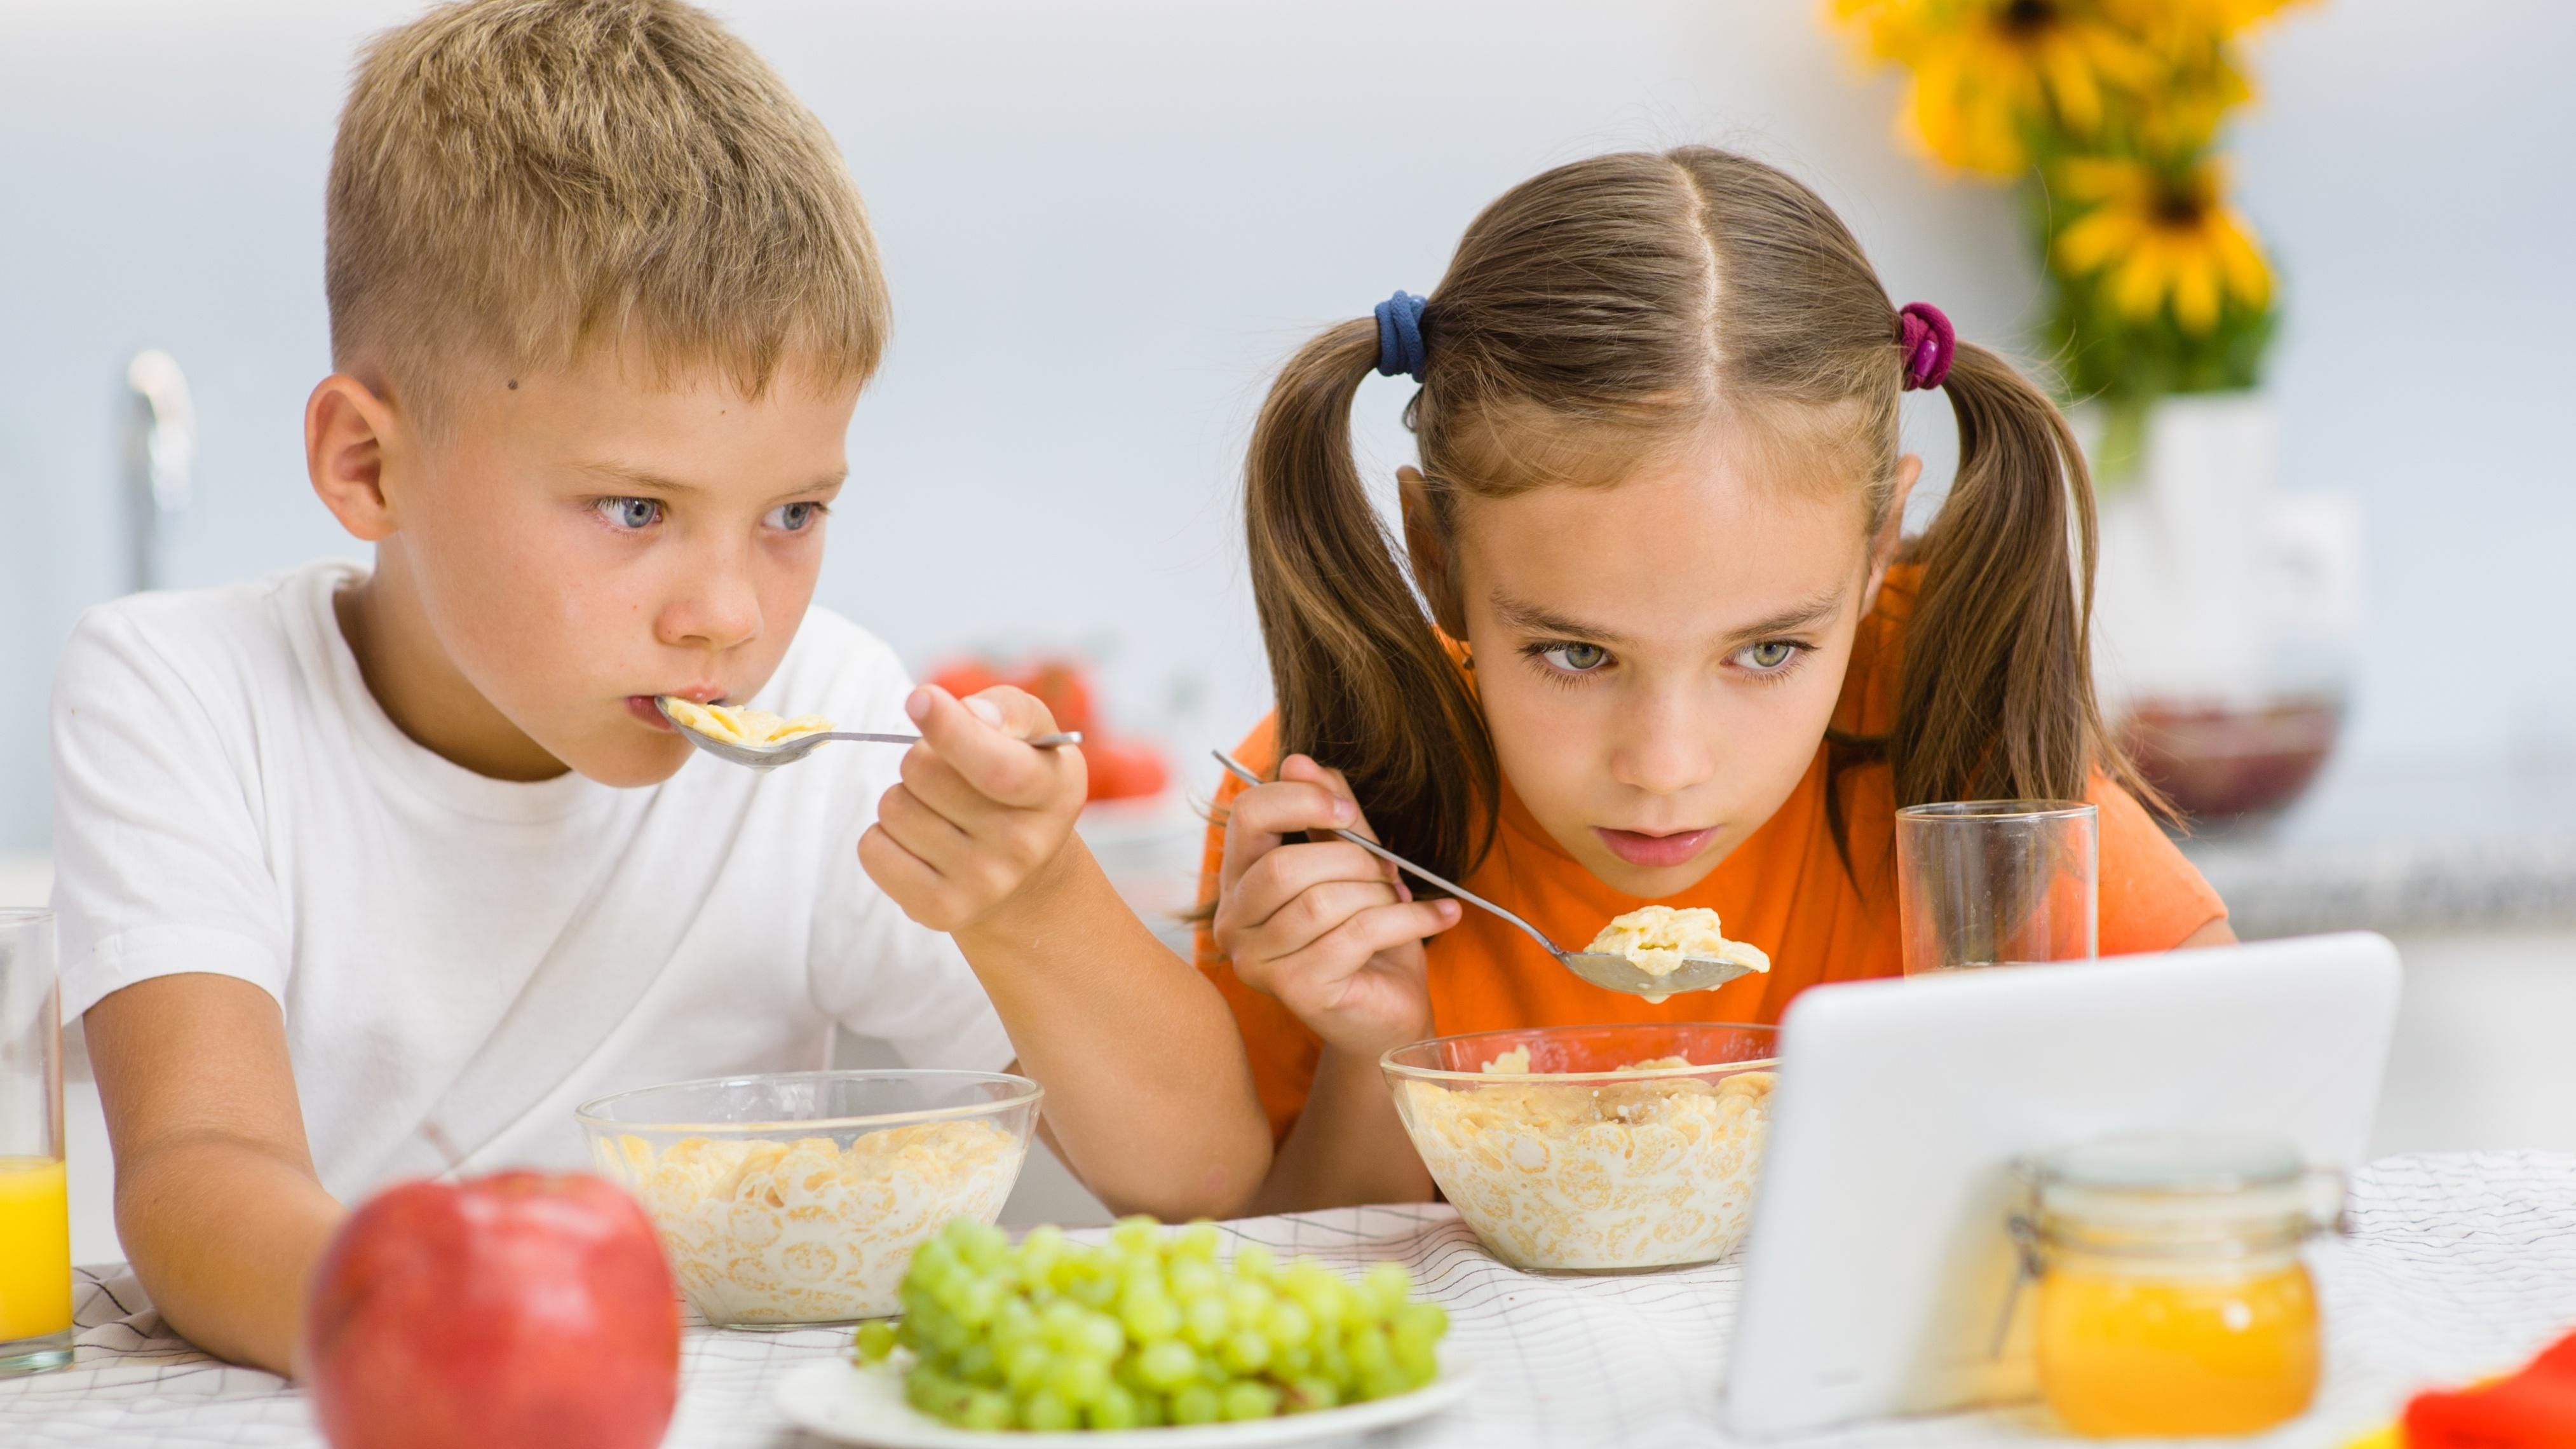 Просмотр мультиков во время еды: какие проблемы могут появиться у детей